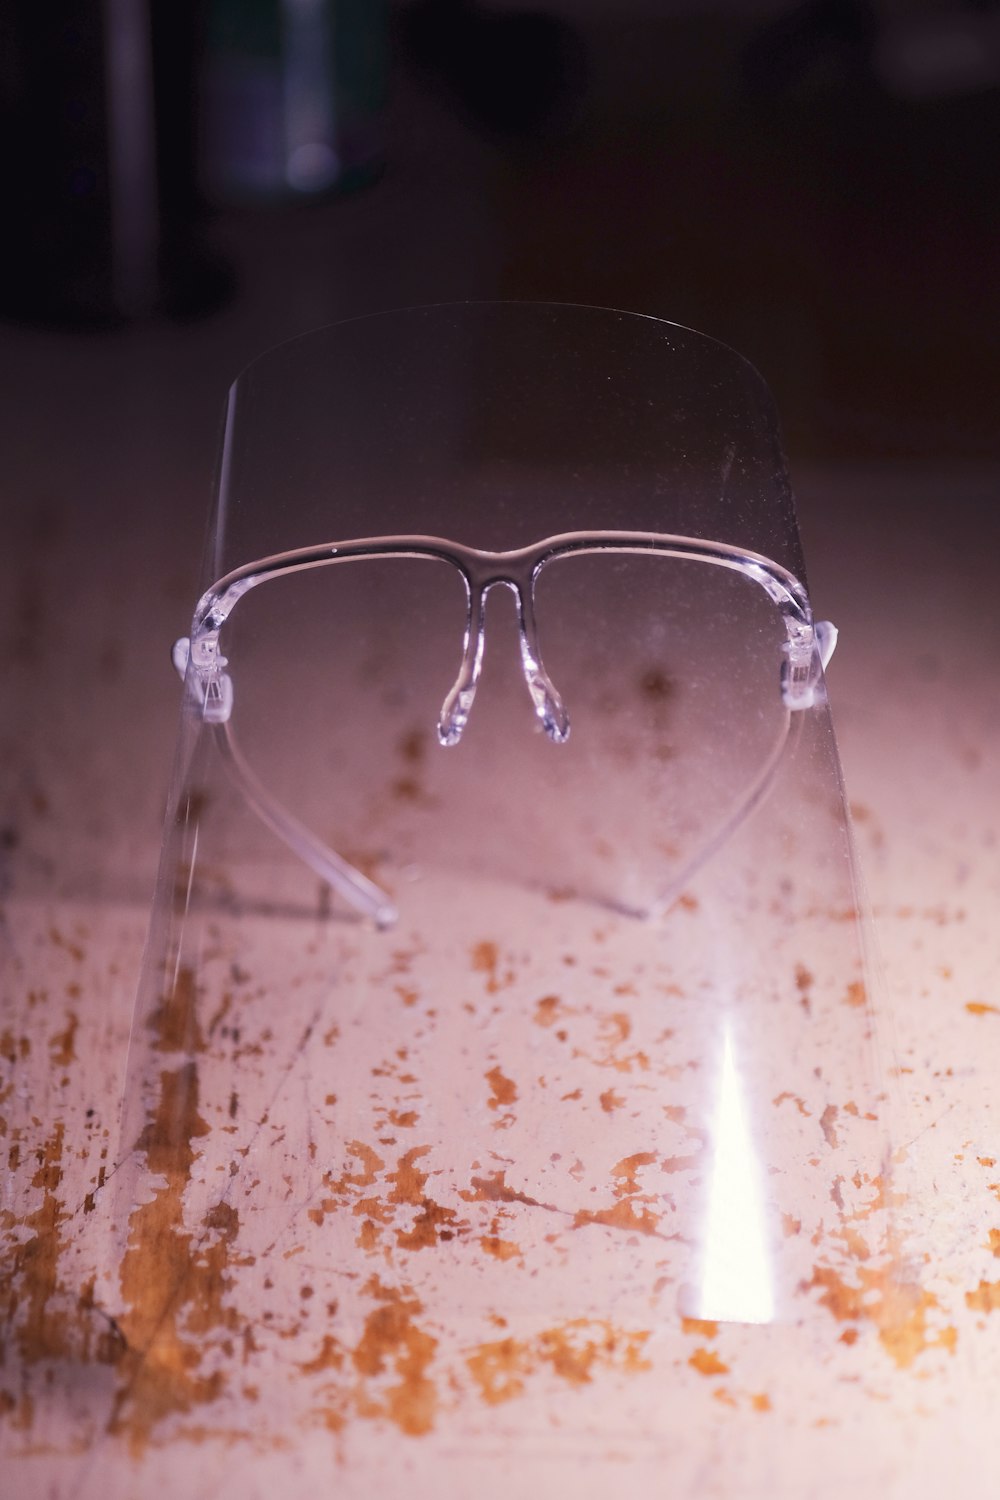 silver framed eyeglasses on white textile